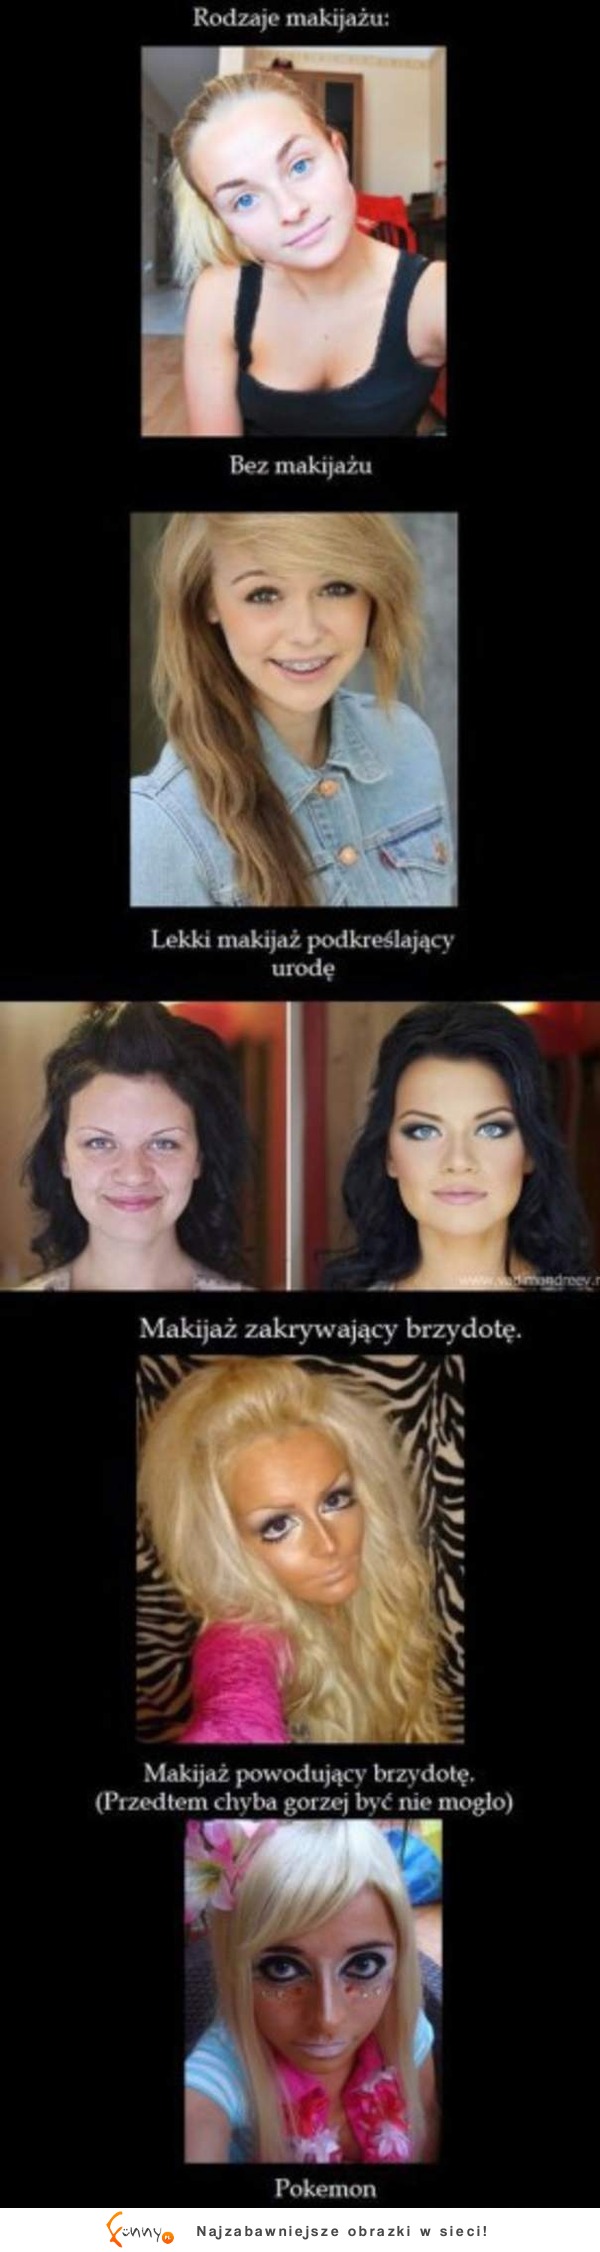 Rodzaje makijażu :-)